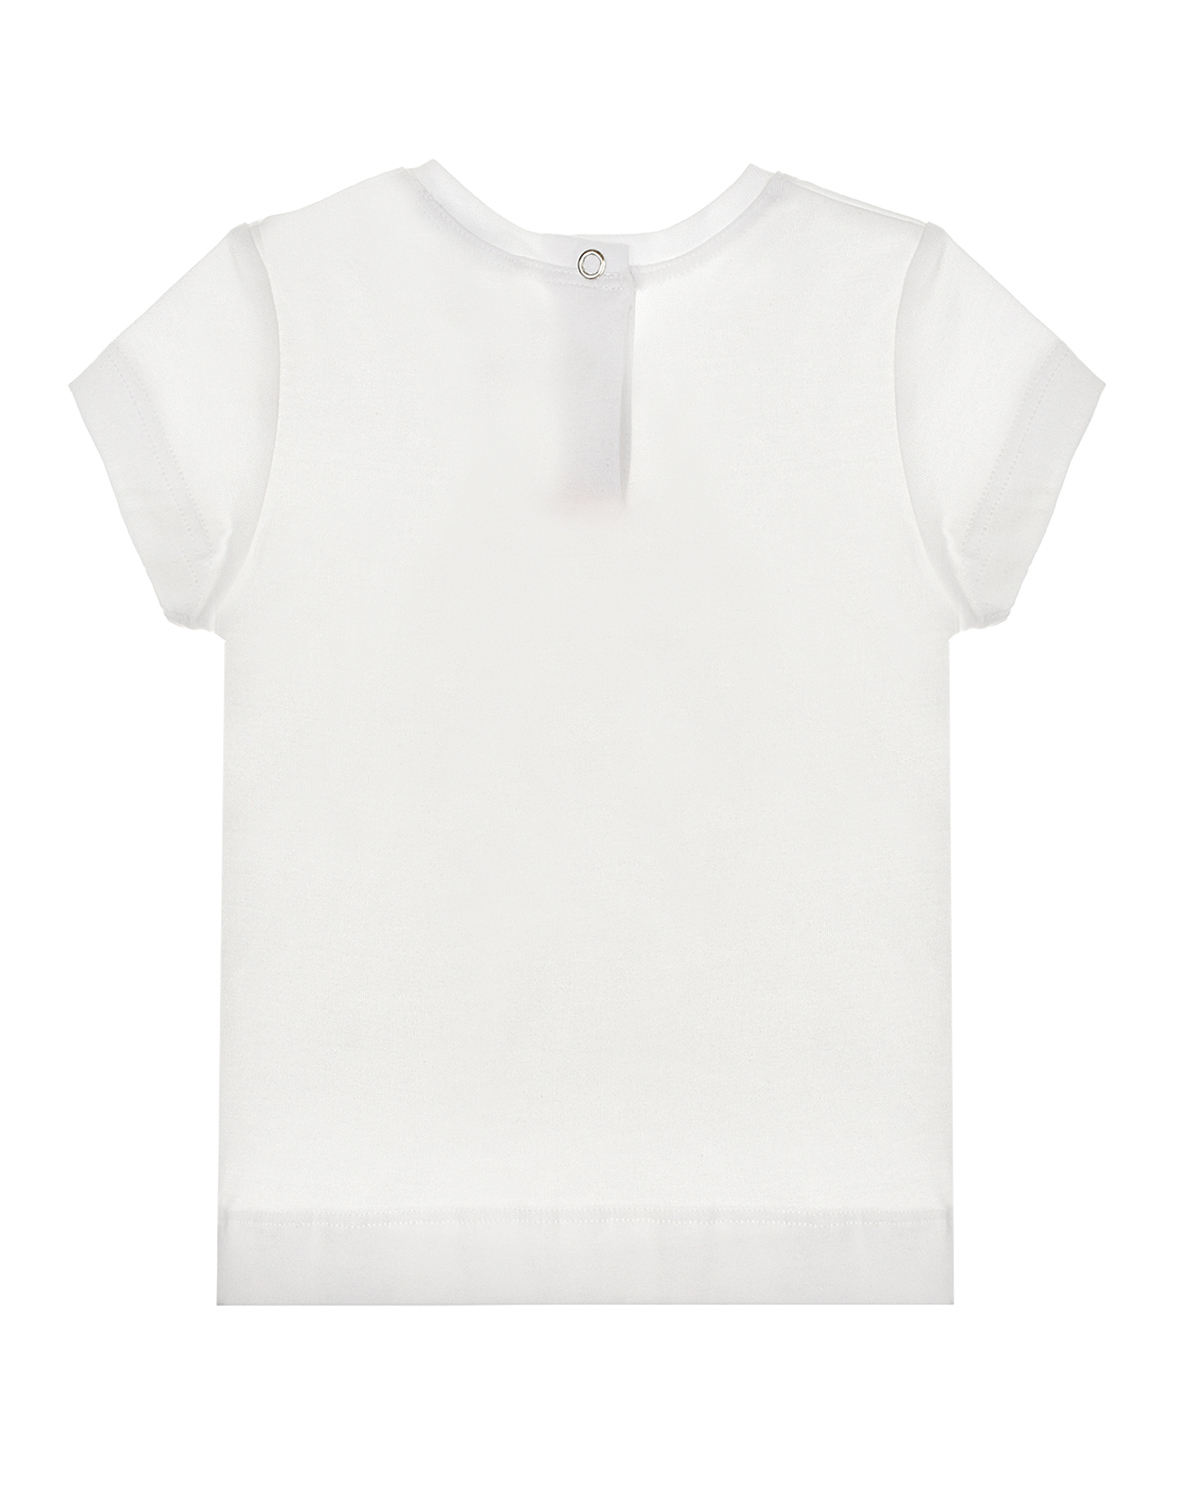 Белая футболка с принтом "якорь" Monnalisa детская, размер 80, цвет белый - фото 2